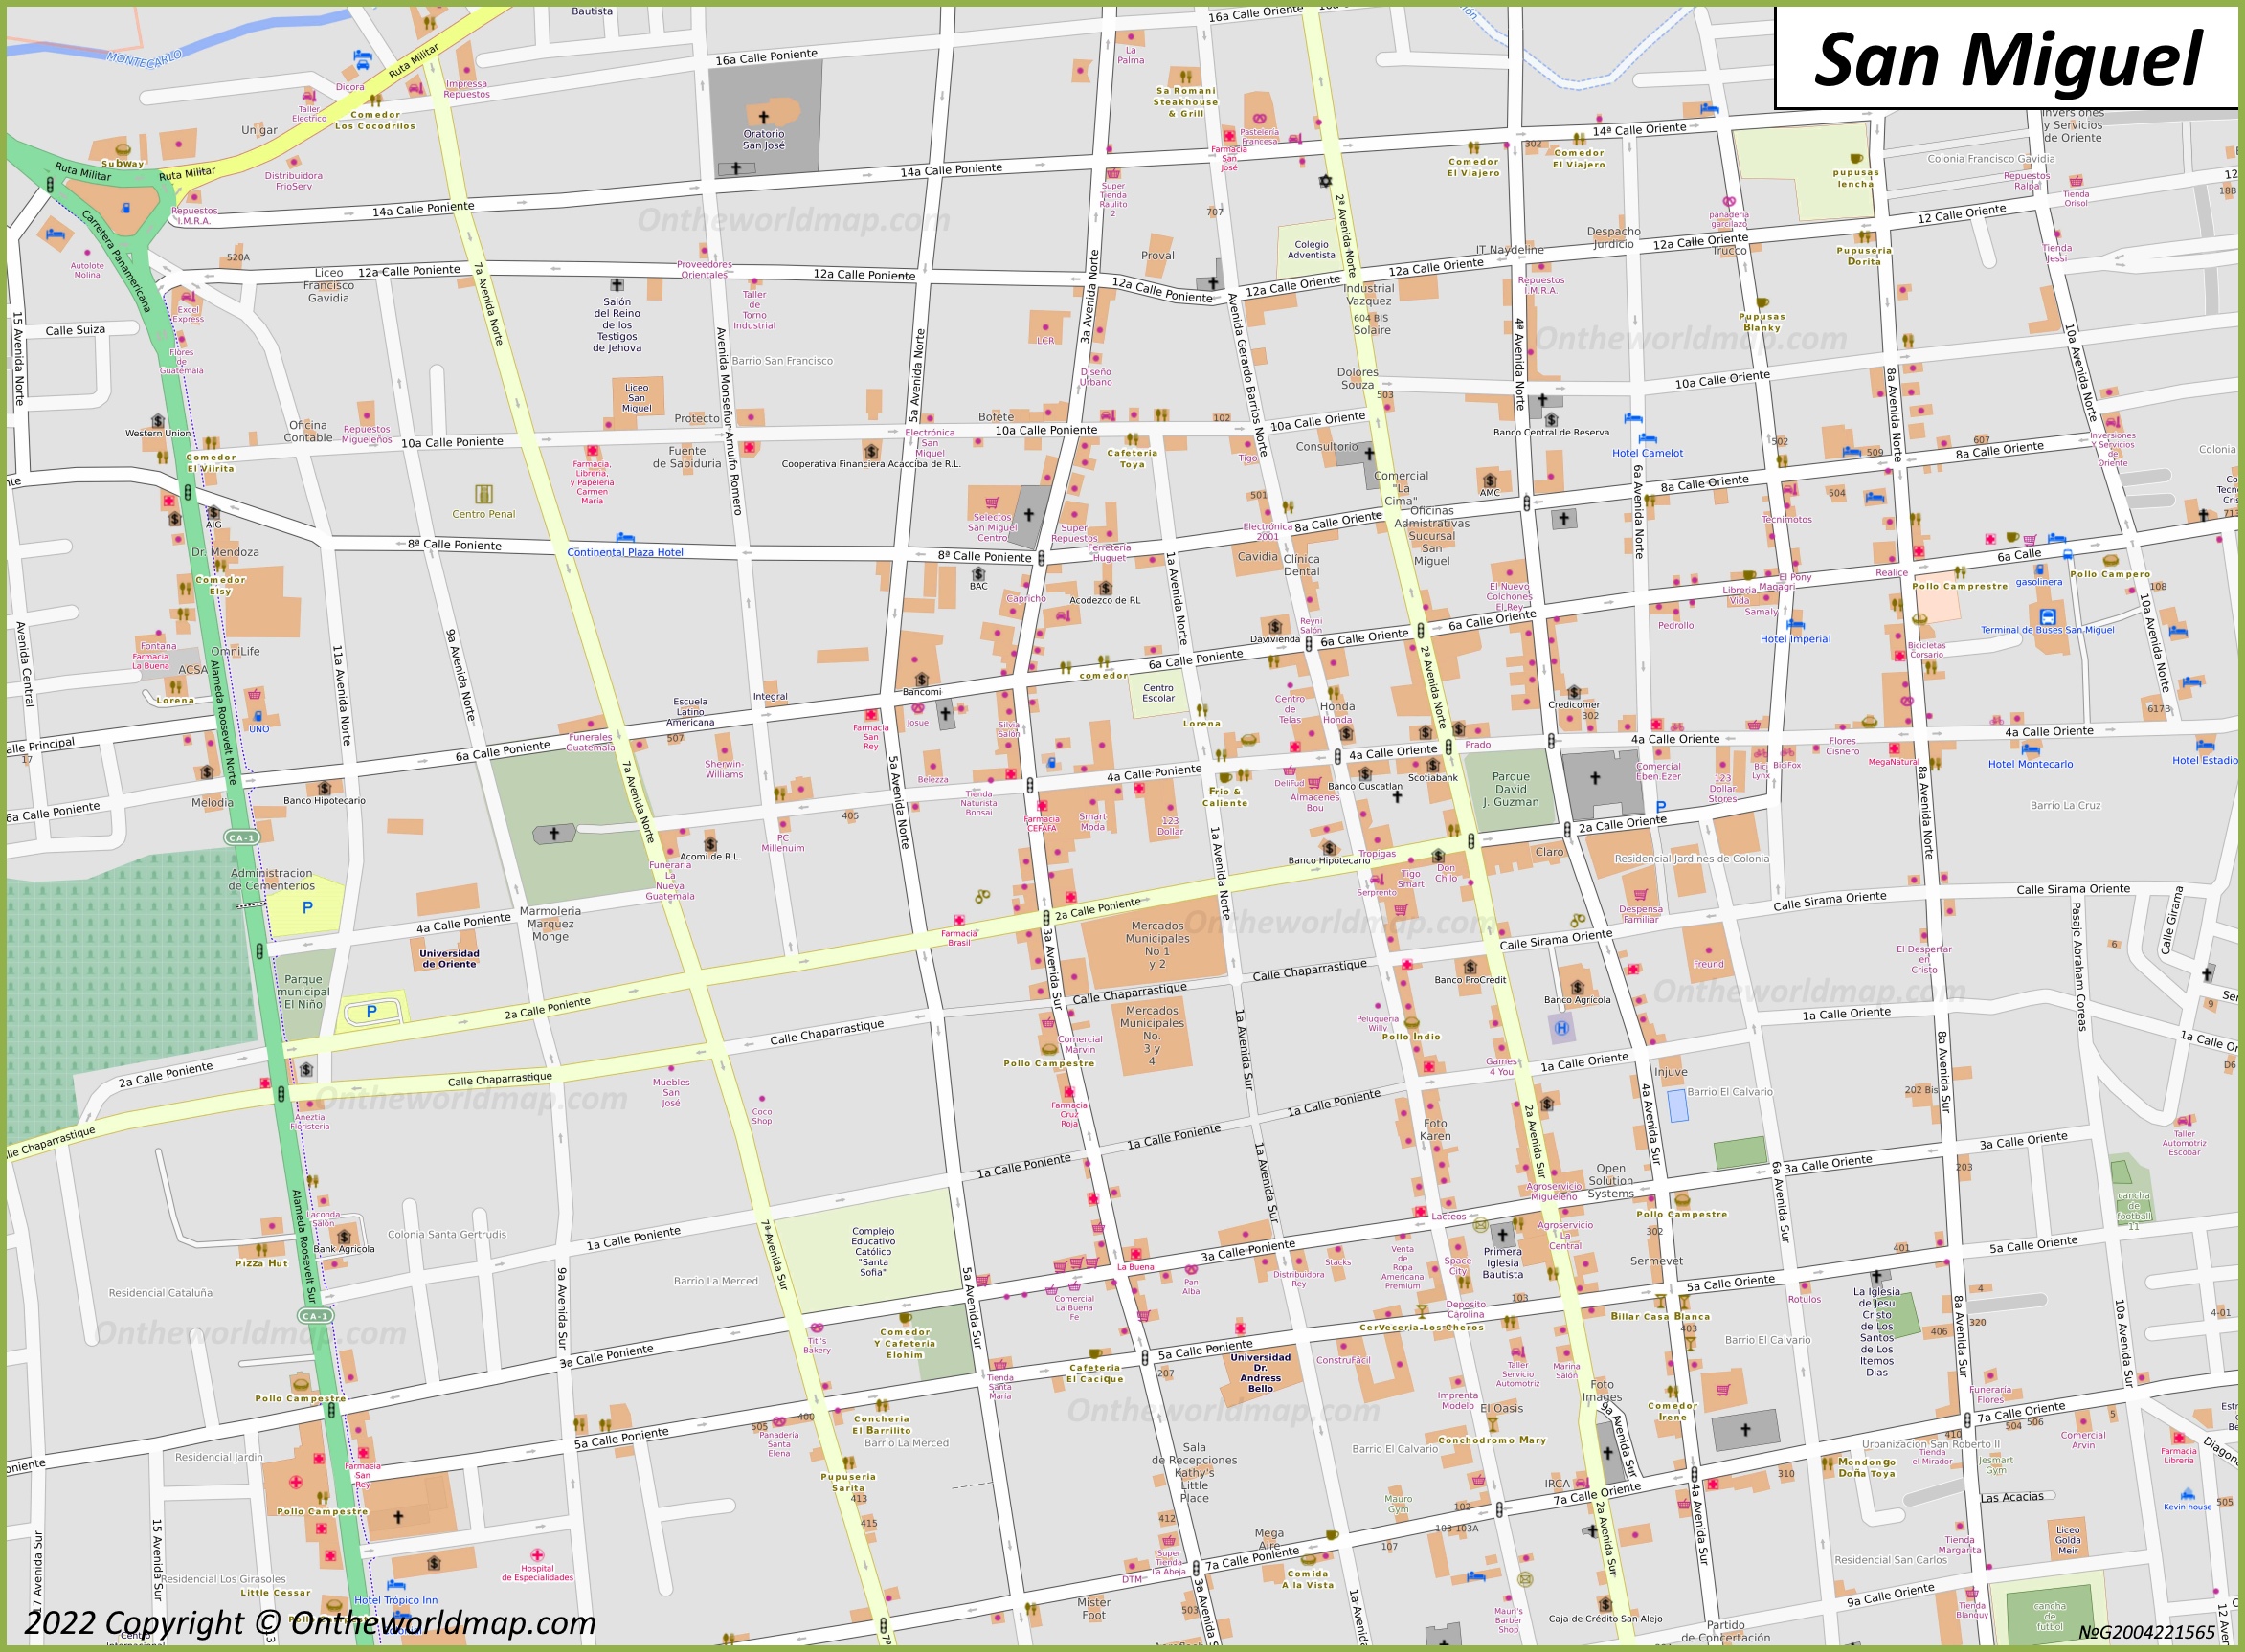 San Miguel City Centre Map